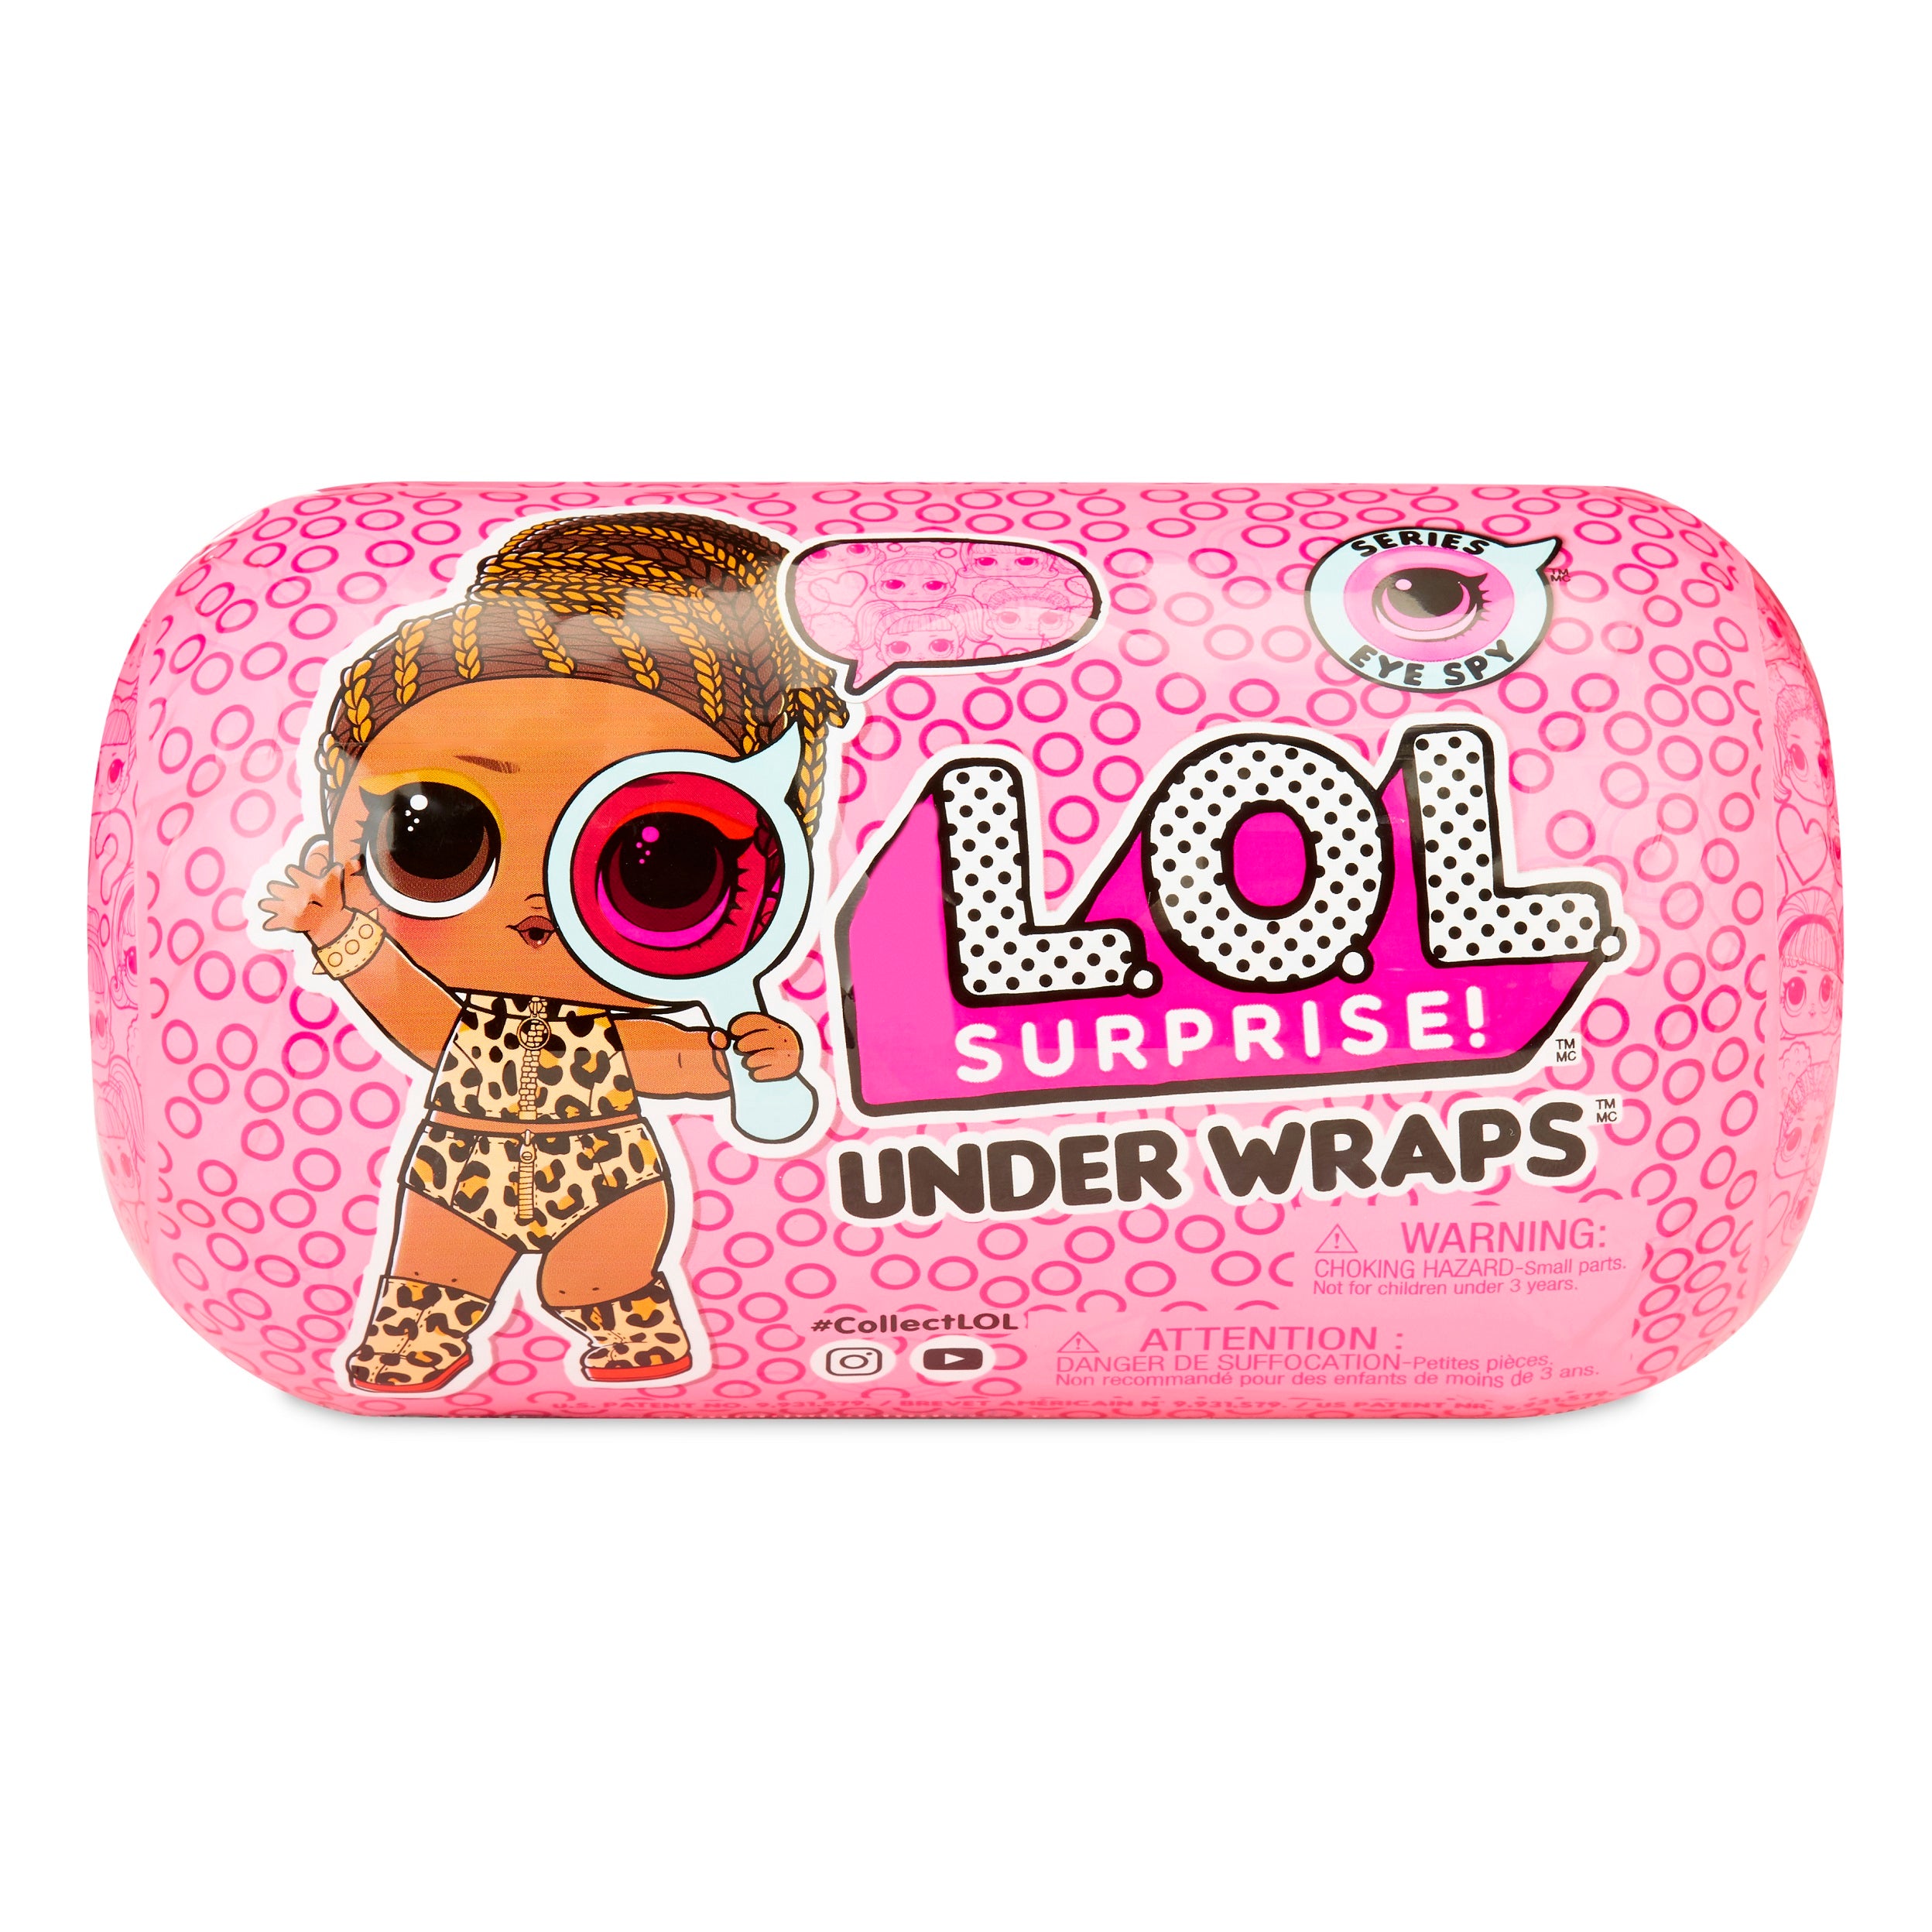 Under Wraps LOL Surprise Dolls